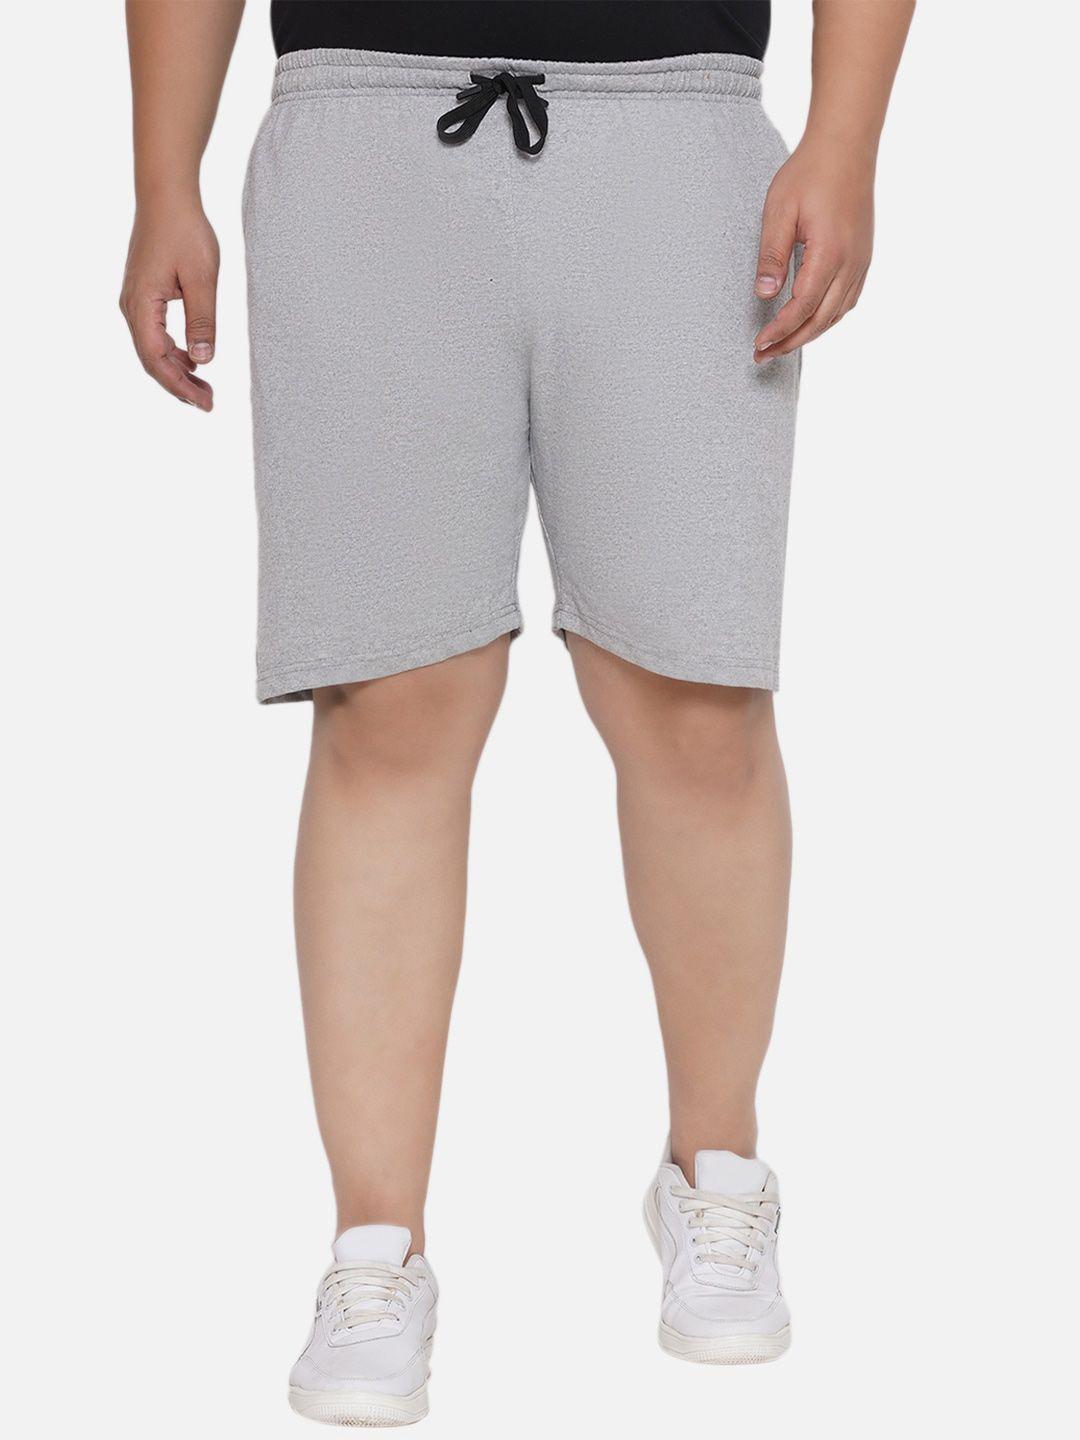 santonio men plus size skinny fit pure cotton sports shorts